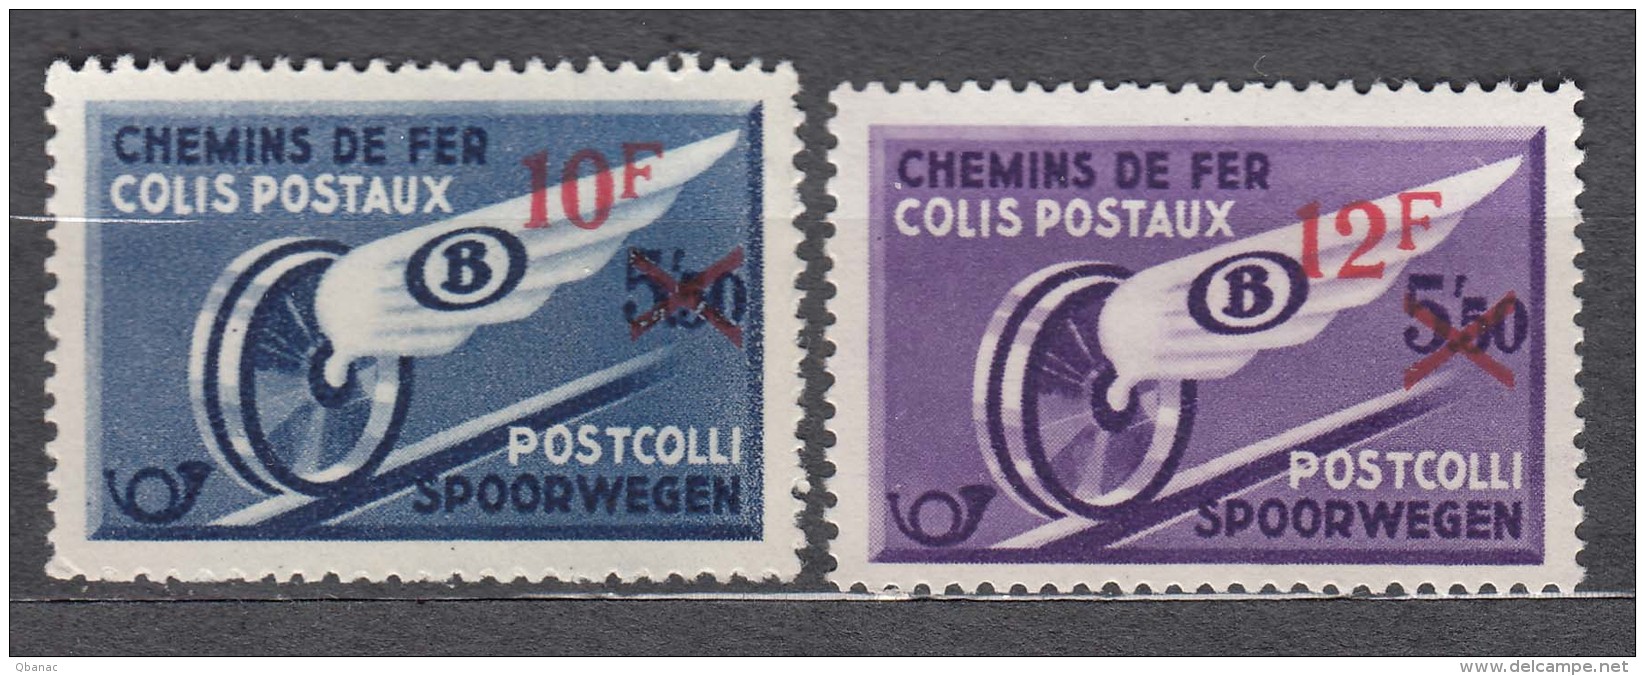 Belgium Postpaket Stamps, Mint Hinged - Reisgoedzegels [BA]